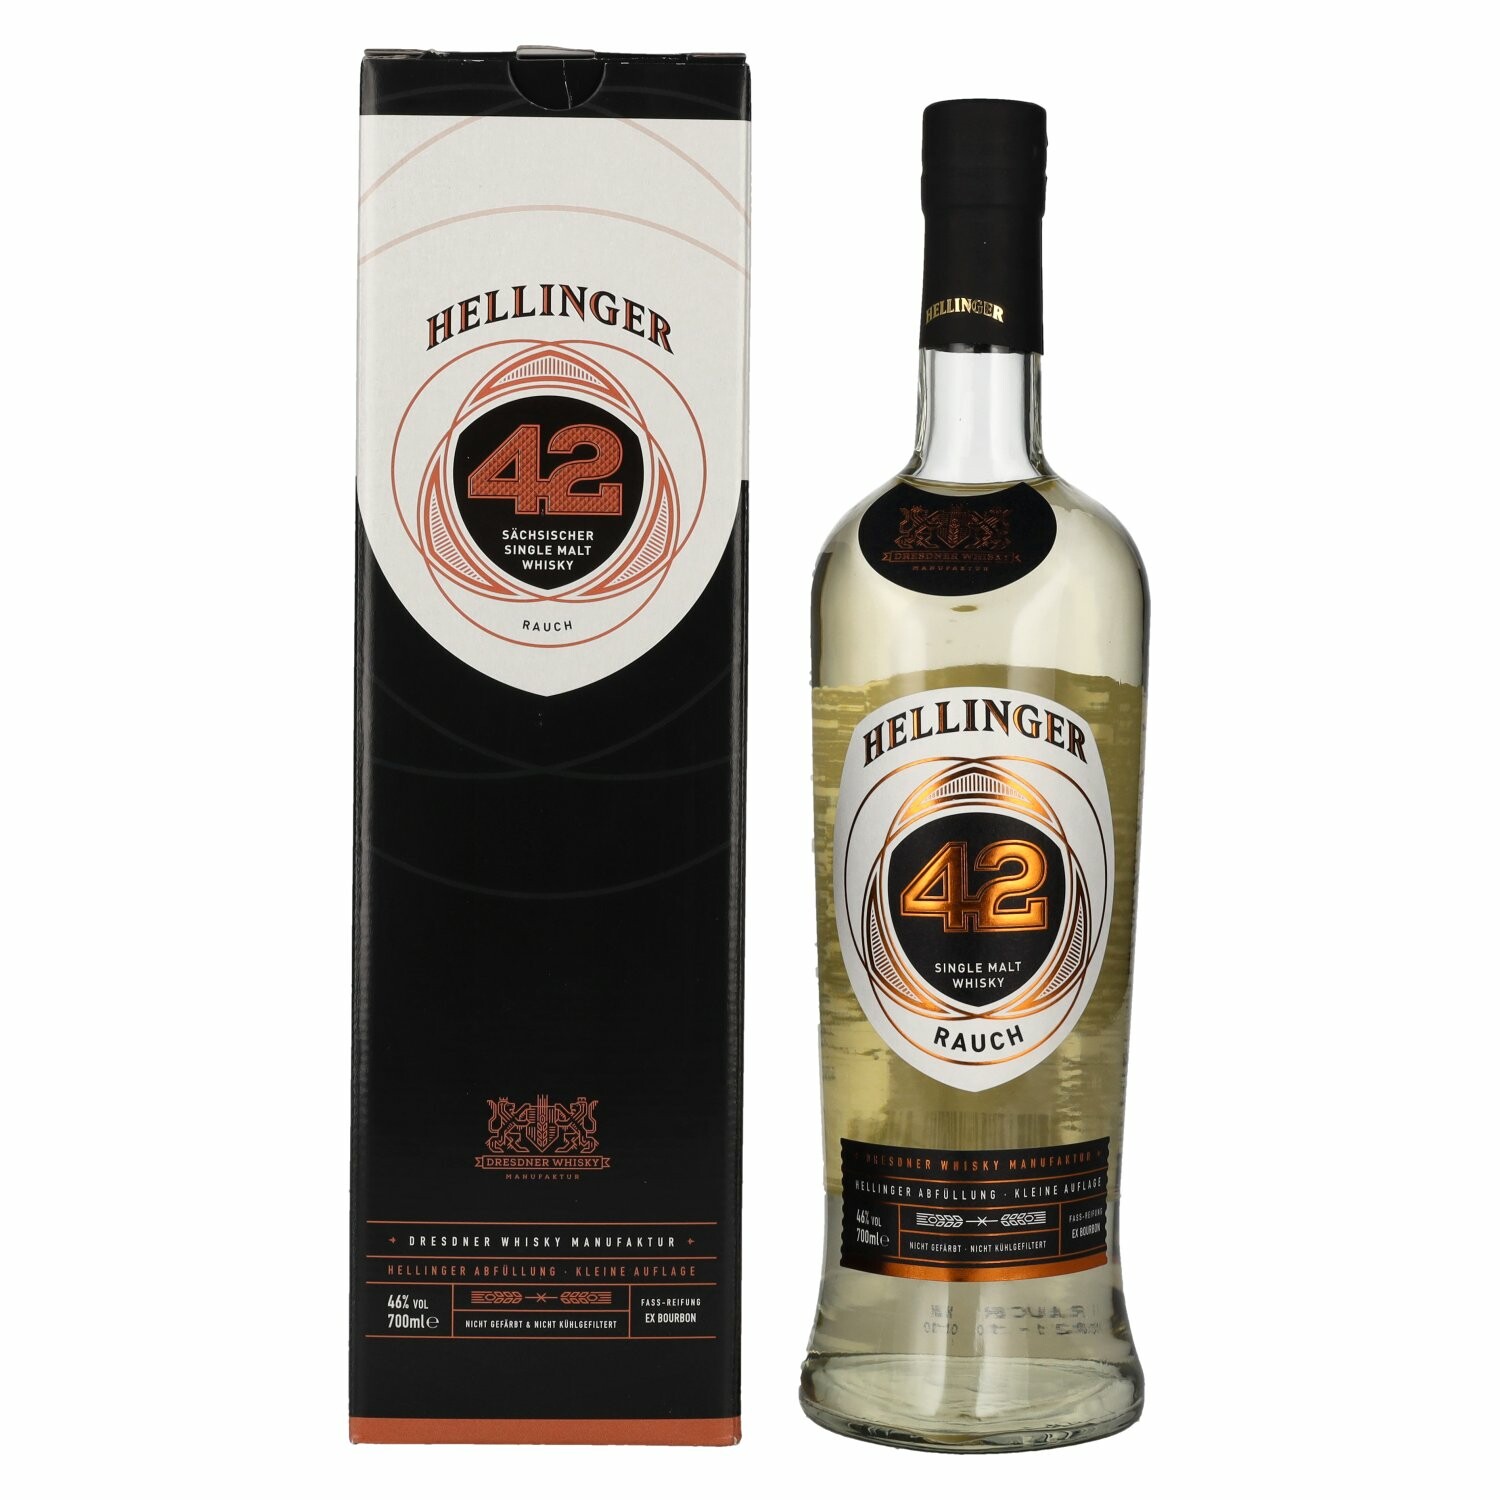 Hellinger 42 RAUCH Sächsischer Single Malt Whisky 46% Vol. 0,7l in Giftbox